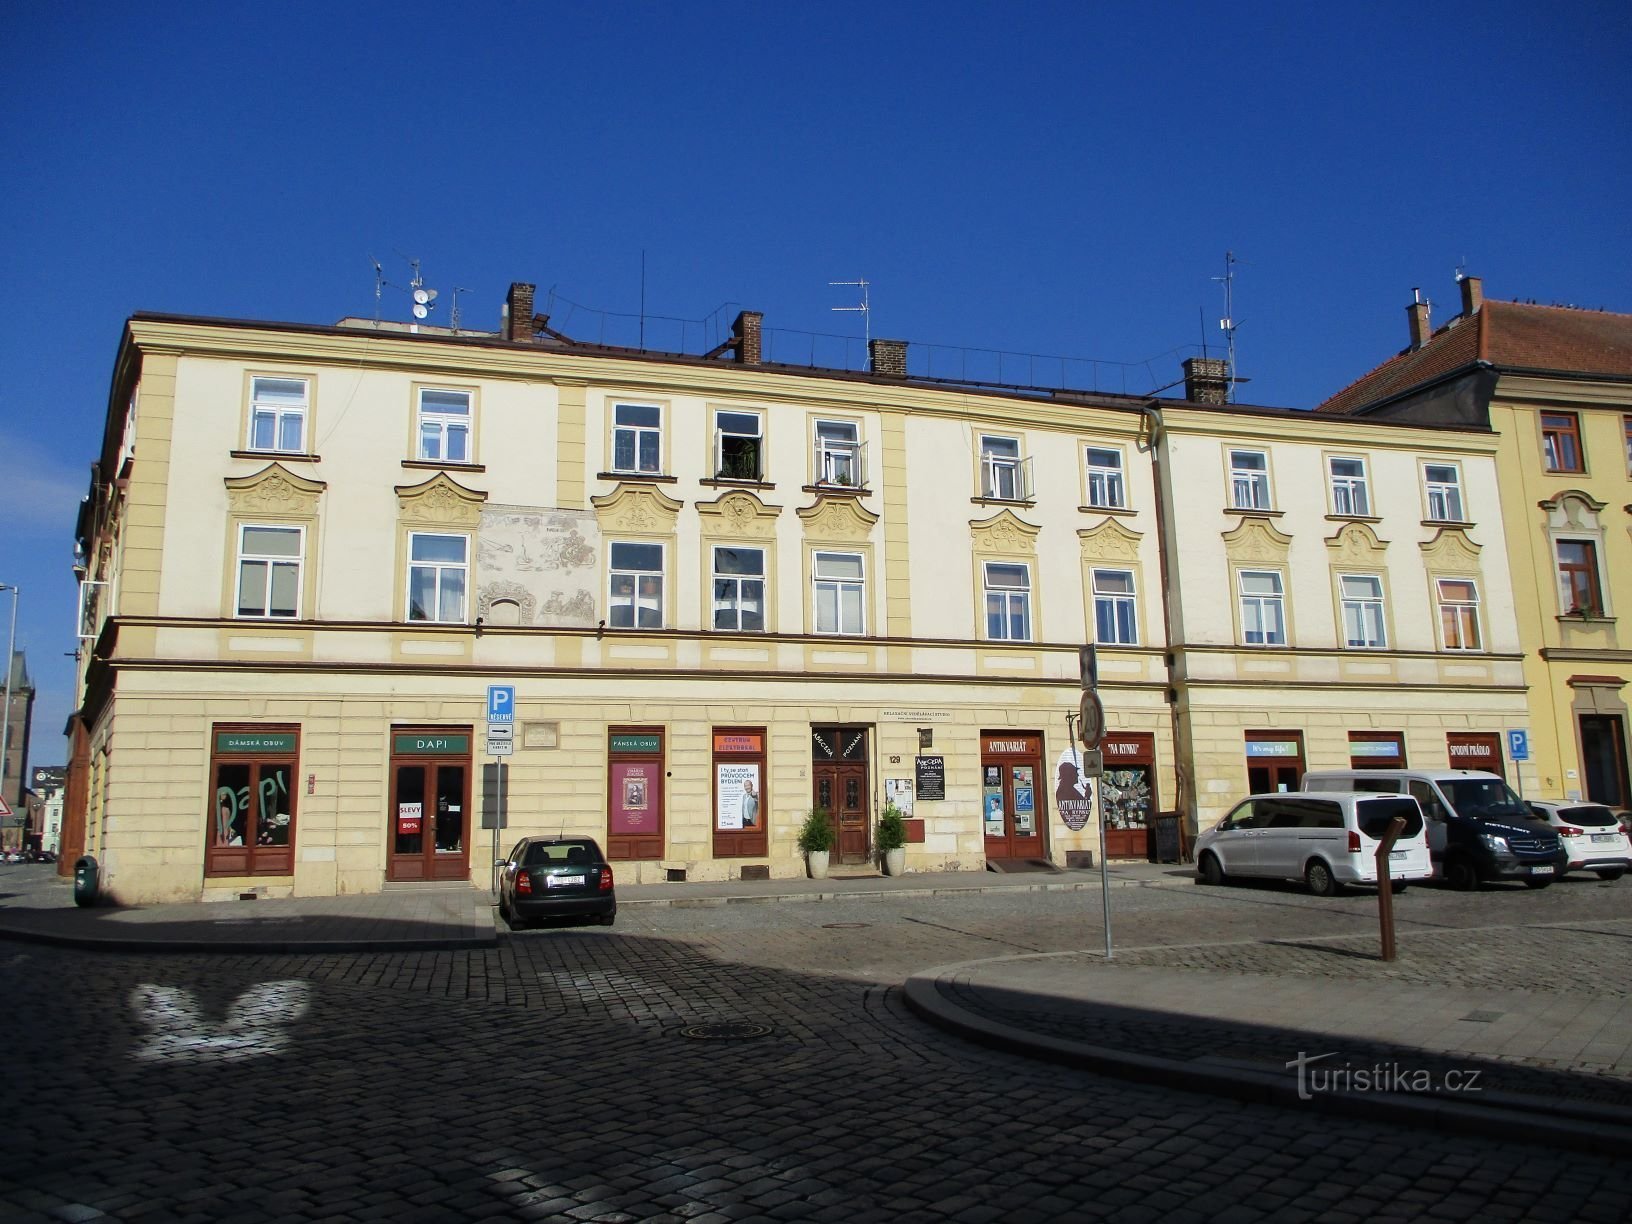 Malé náměstí čp. 129 (Hradec Králové, 6.7.2019)